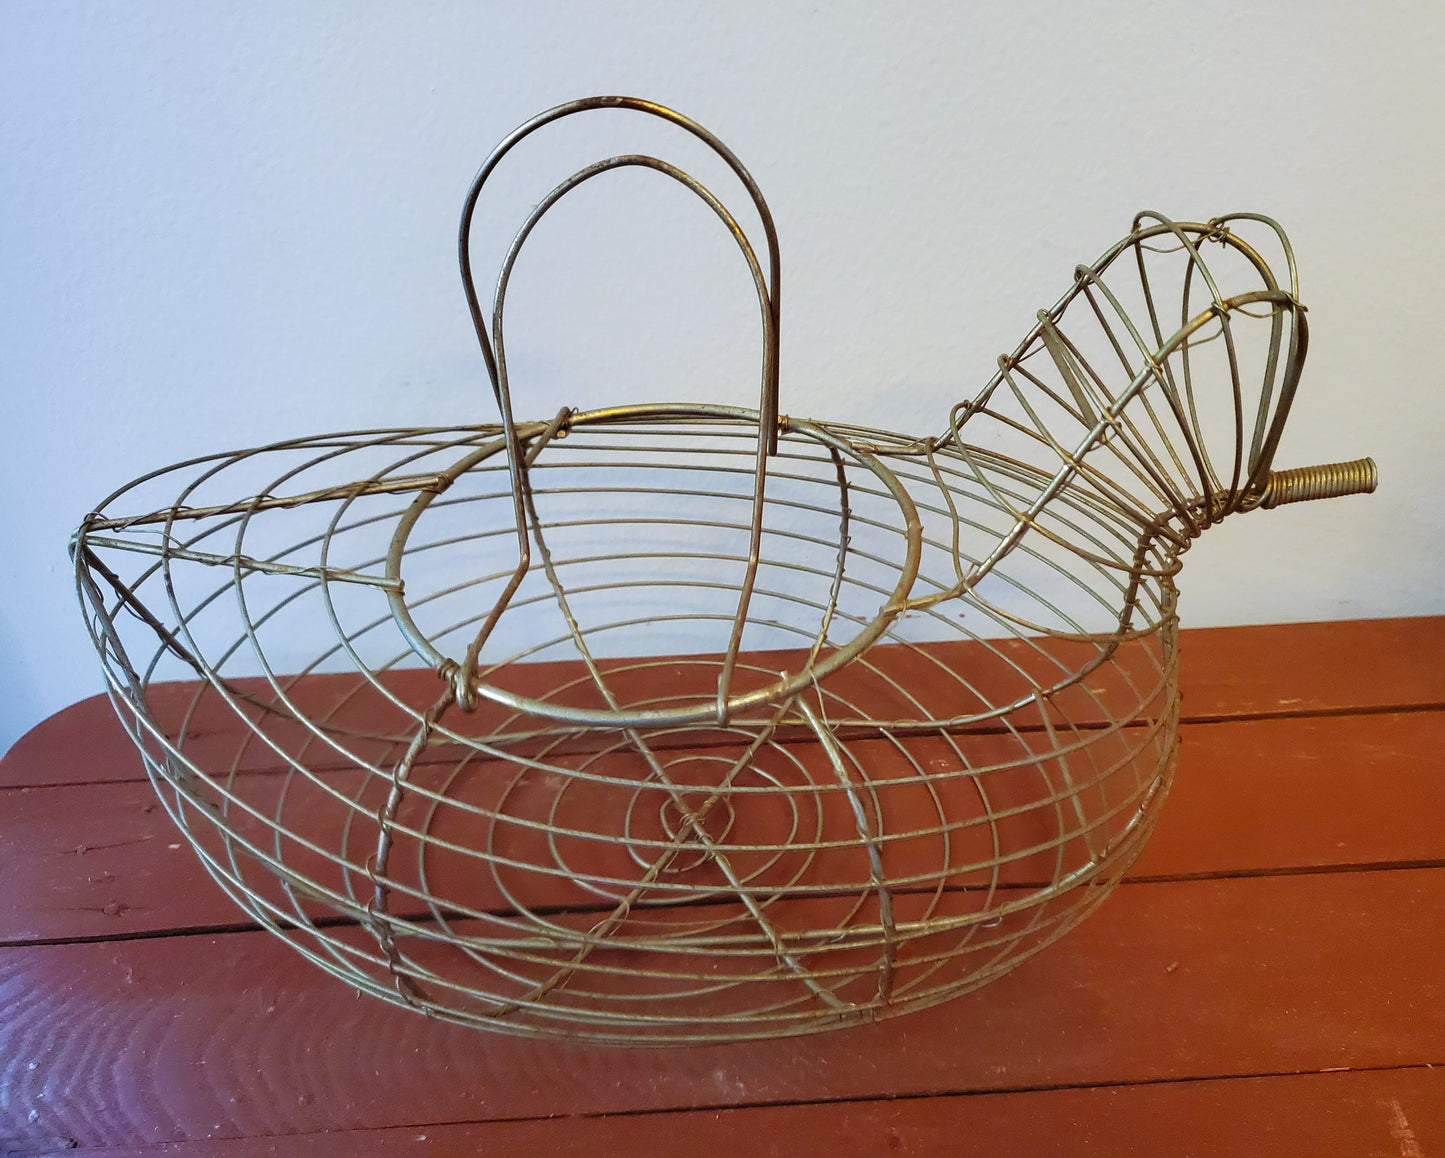 Wire Chicken Egg Basket, Vintage Wire Egg Gathering Basket, Wire